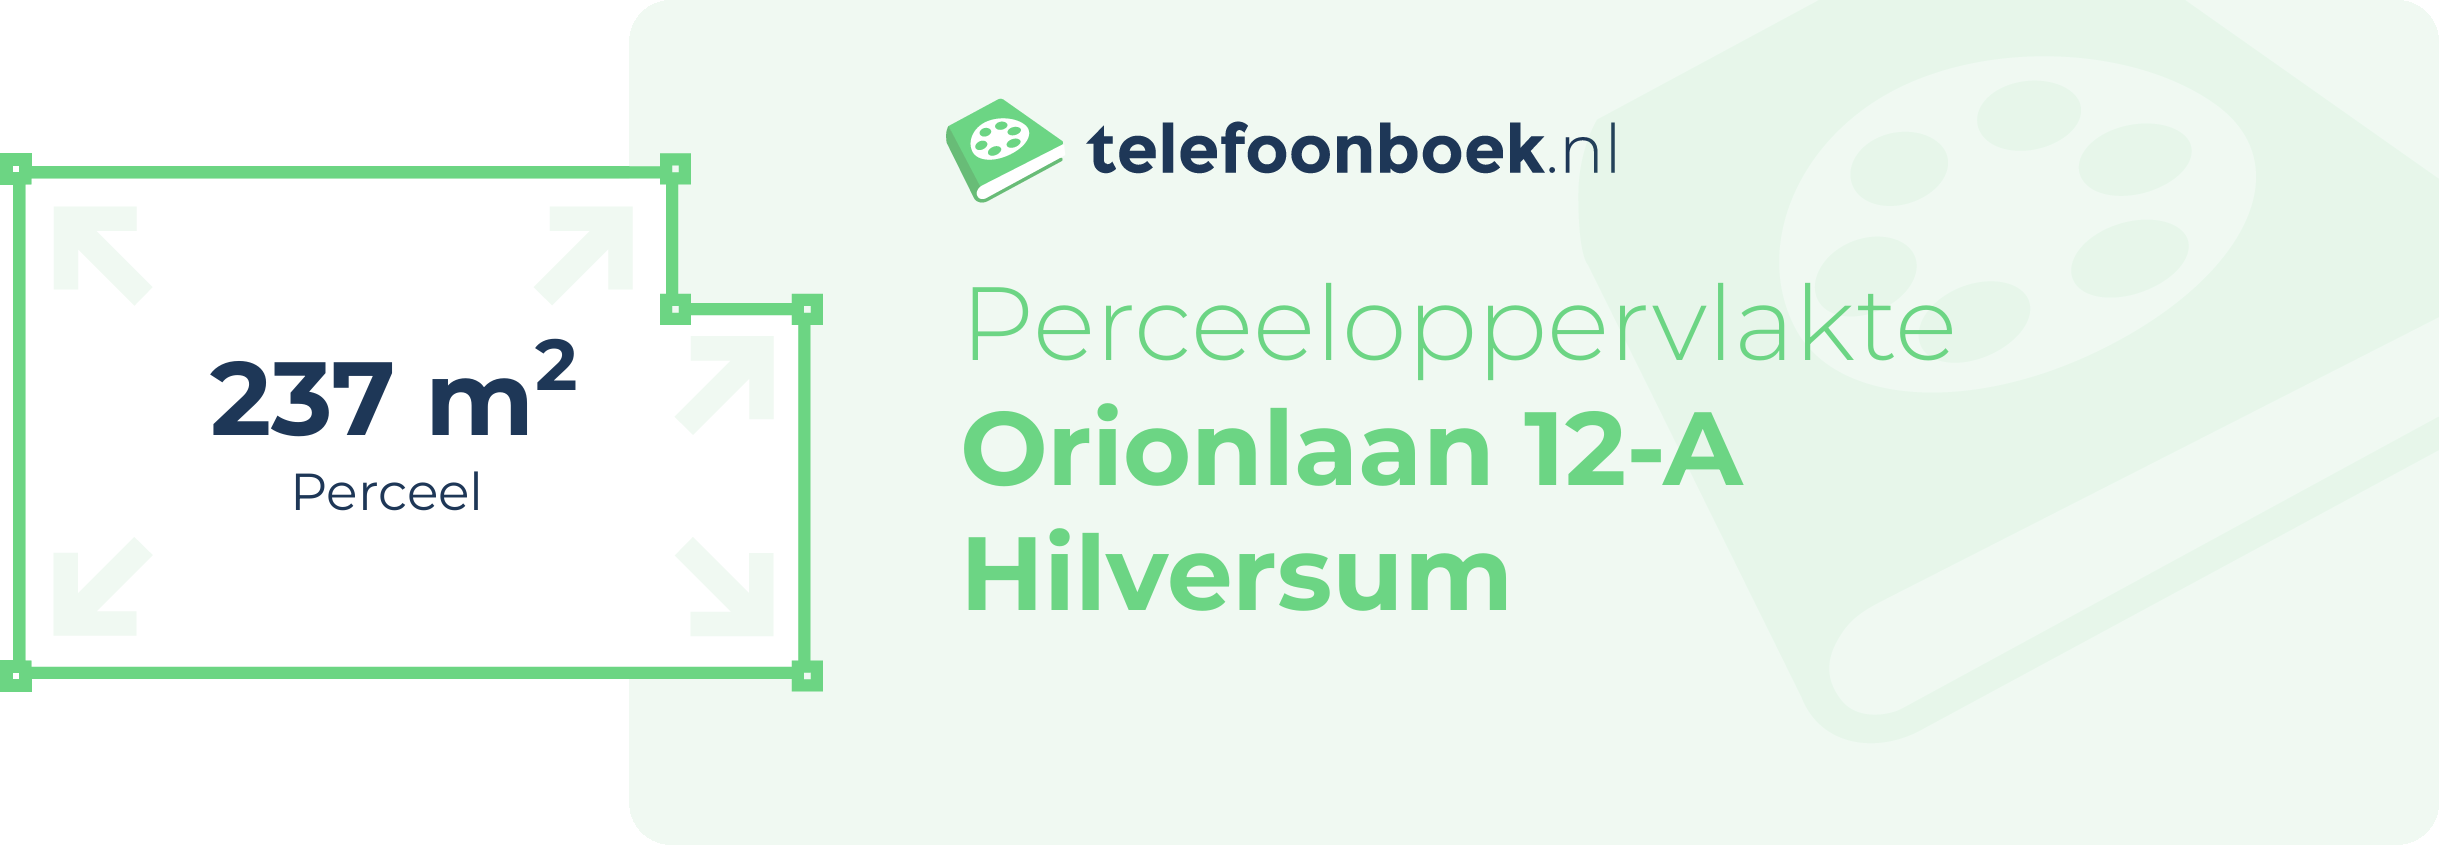 Perceeloppervlakte Orionlaan 12-A Hilversum